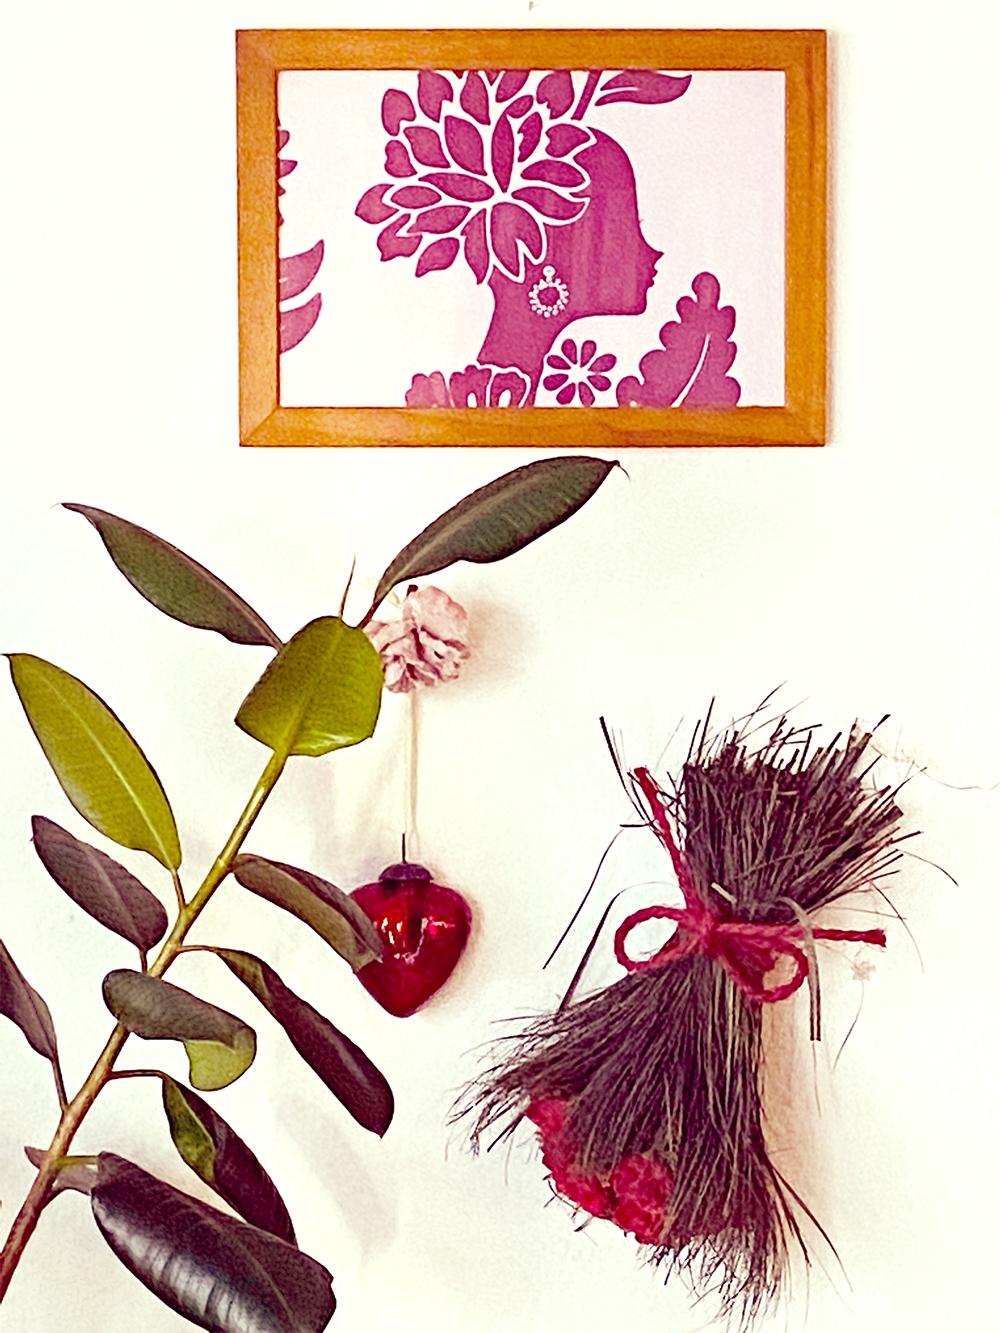 Wohnzimmerwand Details, das gerahmte Bild ist ein Tapetenmuster ;-) #deko #pflanzenliebe #kitsch #wanddeko #couchlieb